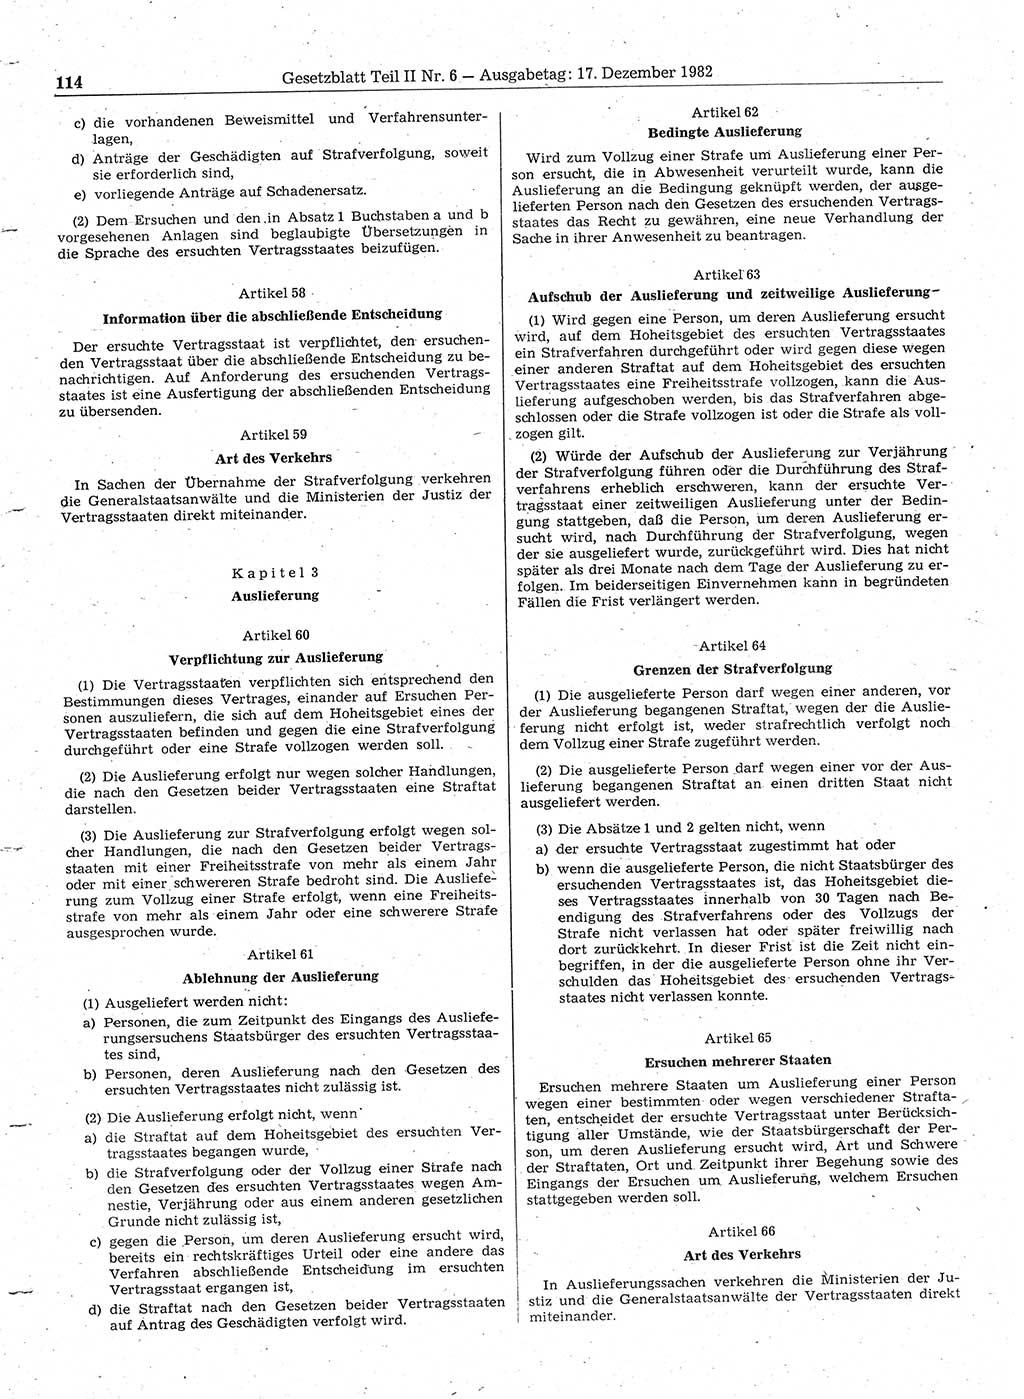 Gesetzblatt (GBl.) der Deutschen Demokratischen Republik (DDR) Teil ⅠⅠ 1982, Seite 114 (GBl. DDR ⅠⅠ 1982, S. 114)